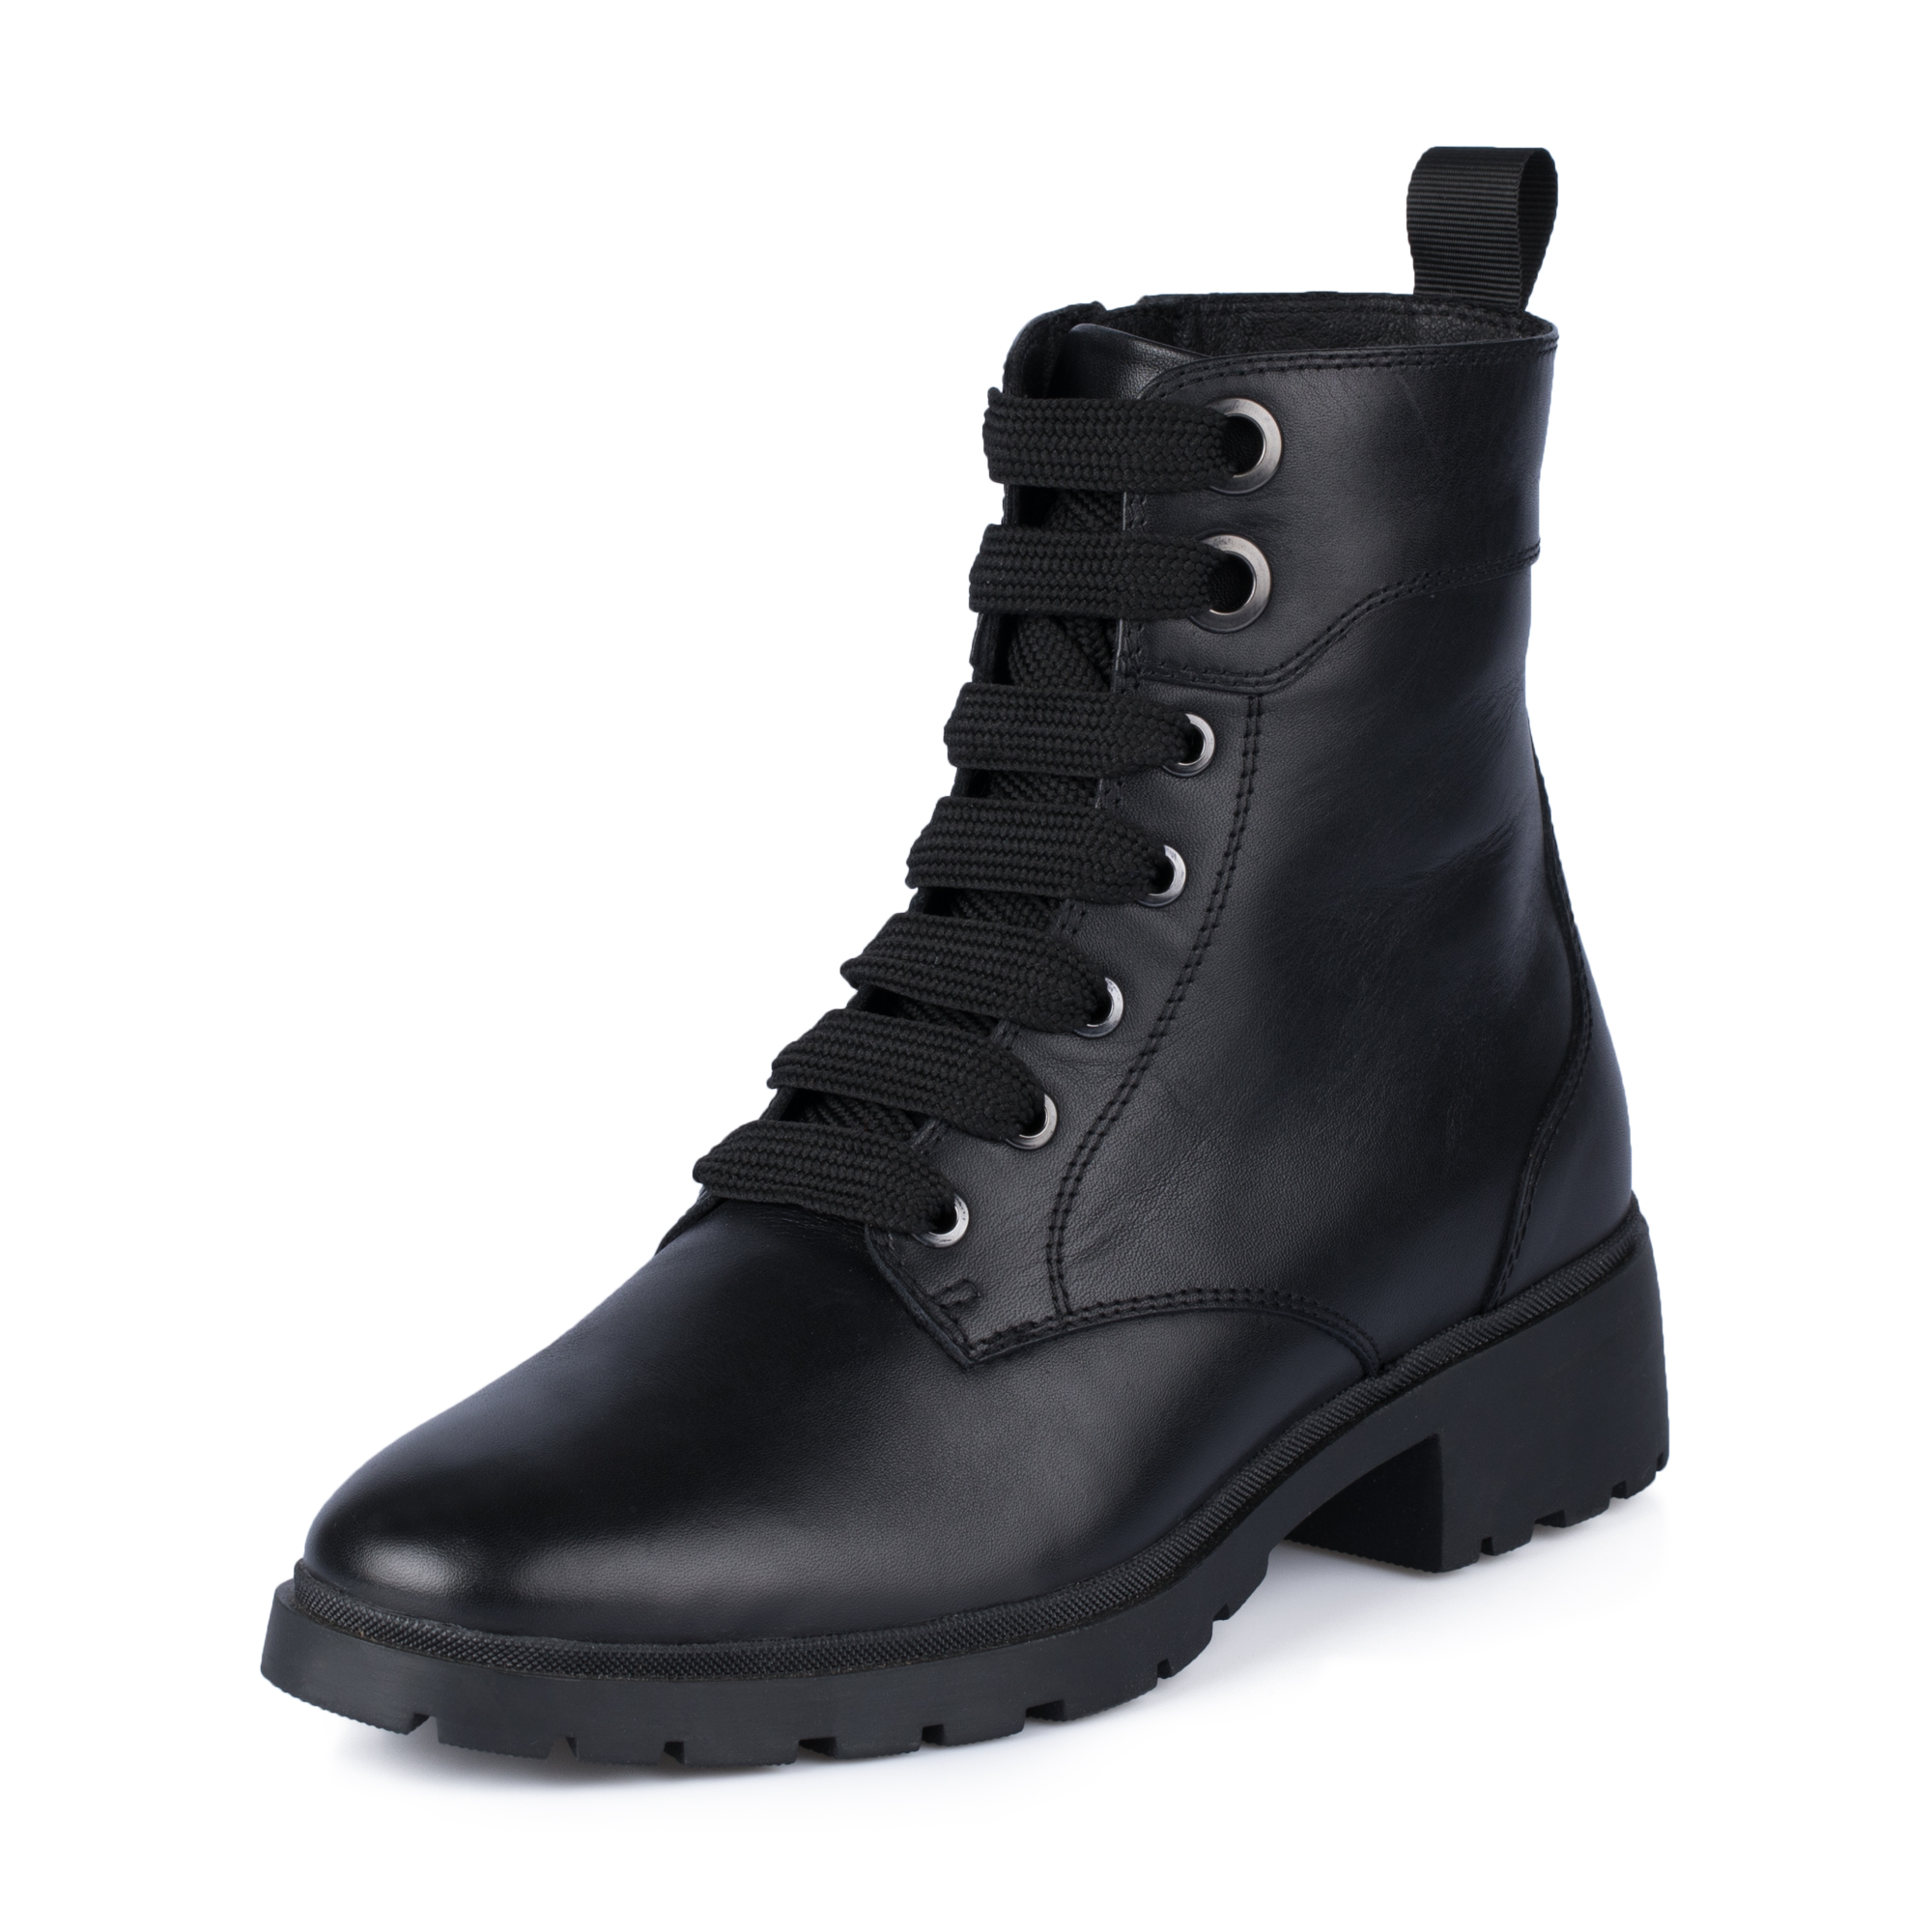 Ботинки Thomas Munz 569-193A-2102, цвет черный, размер 39 - фото 2